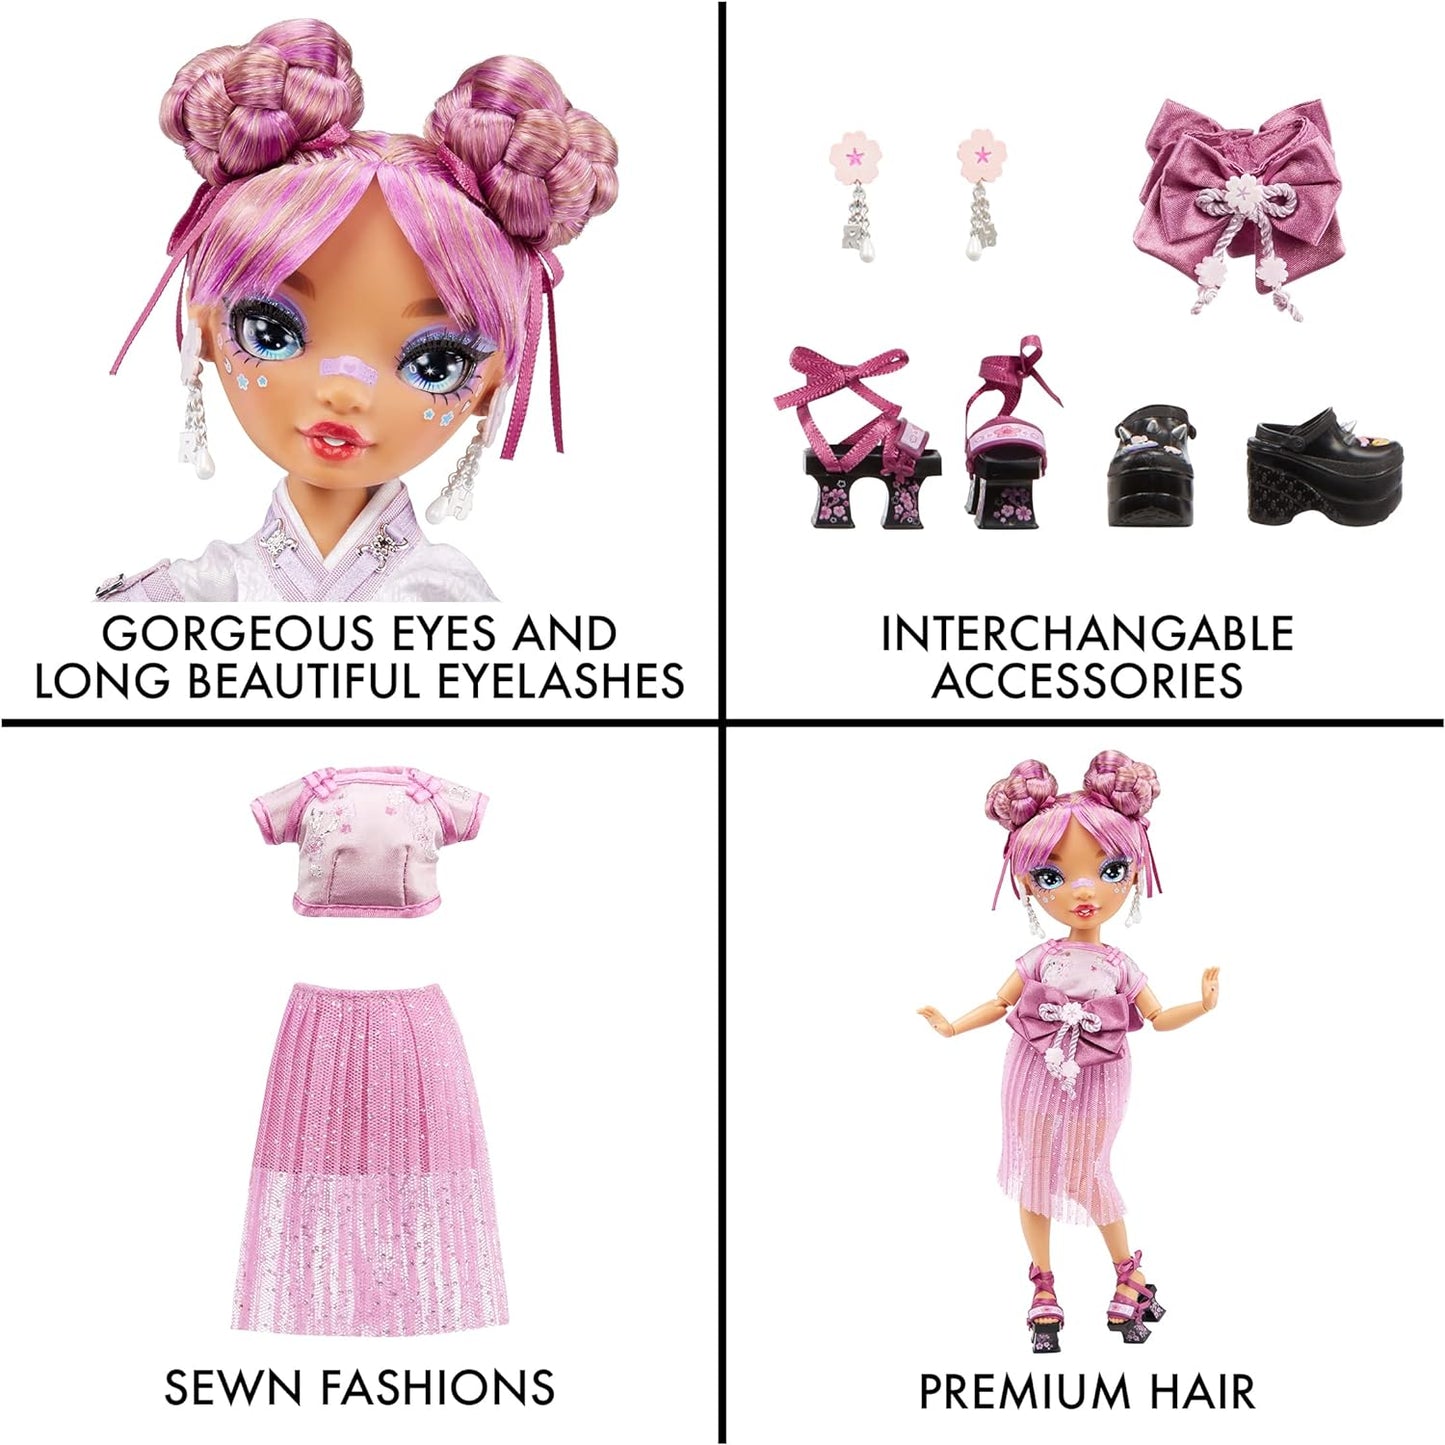 Rainbow High LILA YAMAMOTO – Boneca fashion roxa malva inclui 2 roupas de grife Mix & Match com acessórios – para crianças de 6 a 12 anos e colecionadores